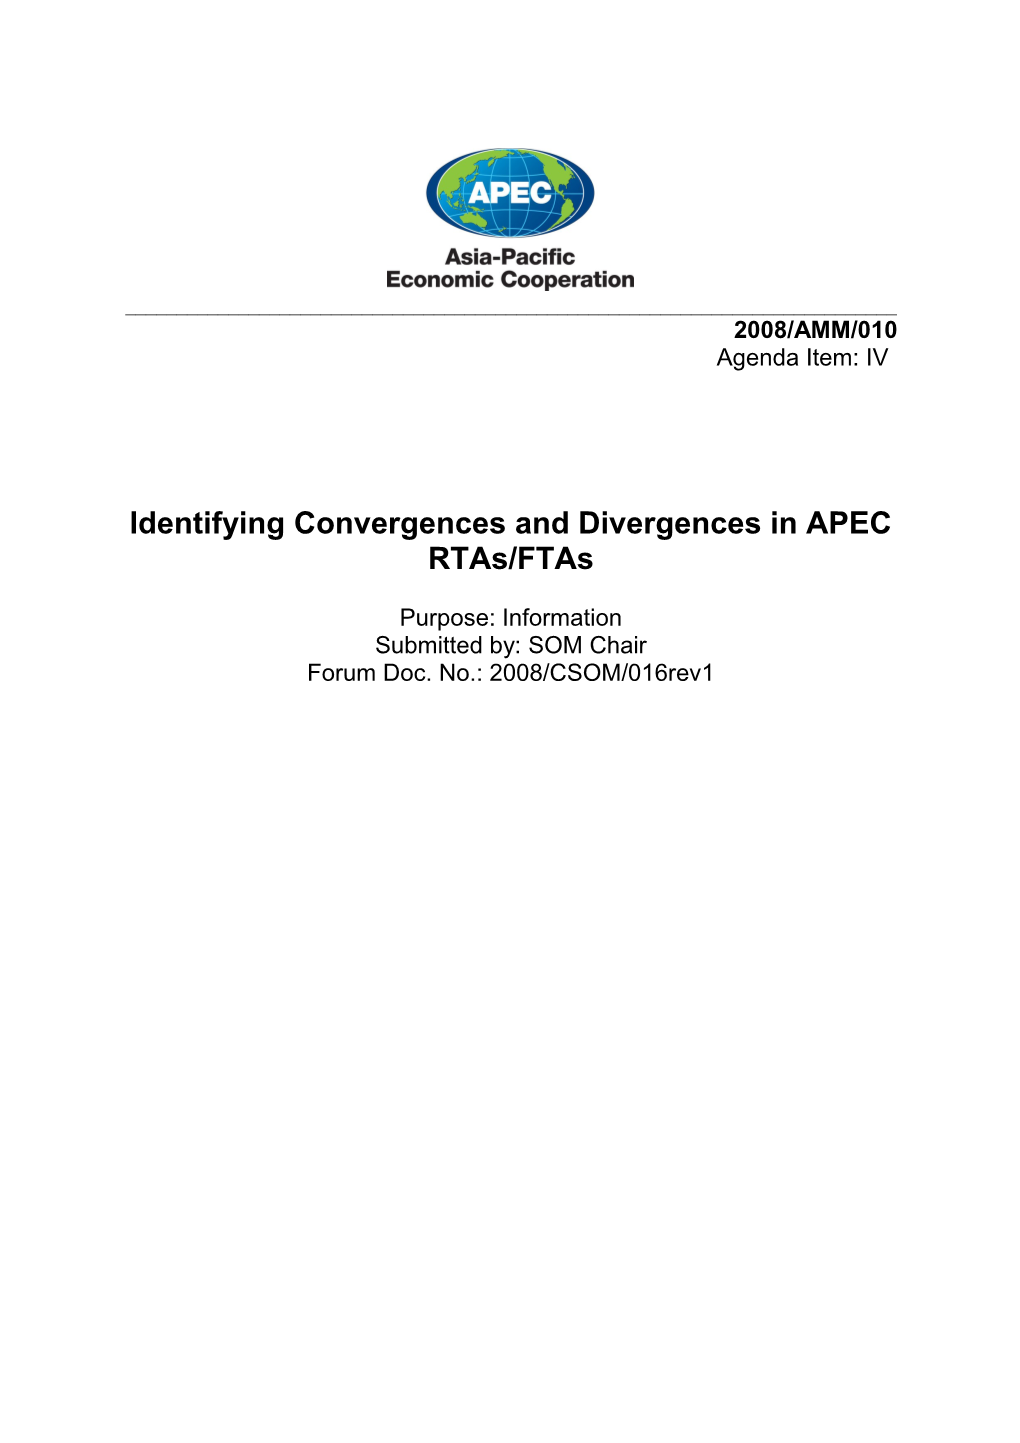 Identifying Convergences And Divergences In APEC Rtas/Ftas